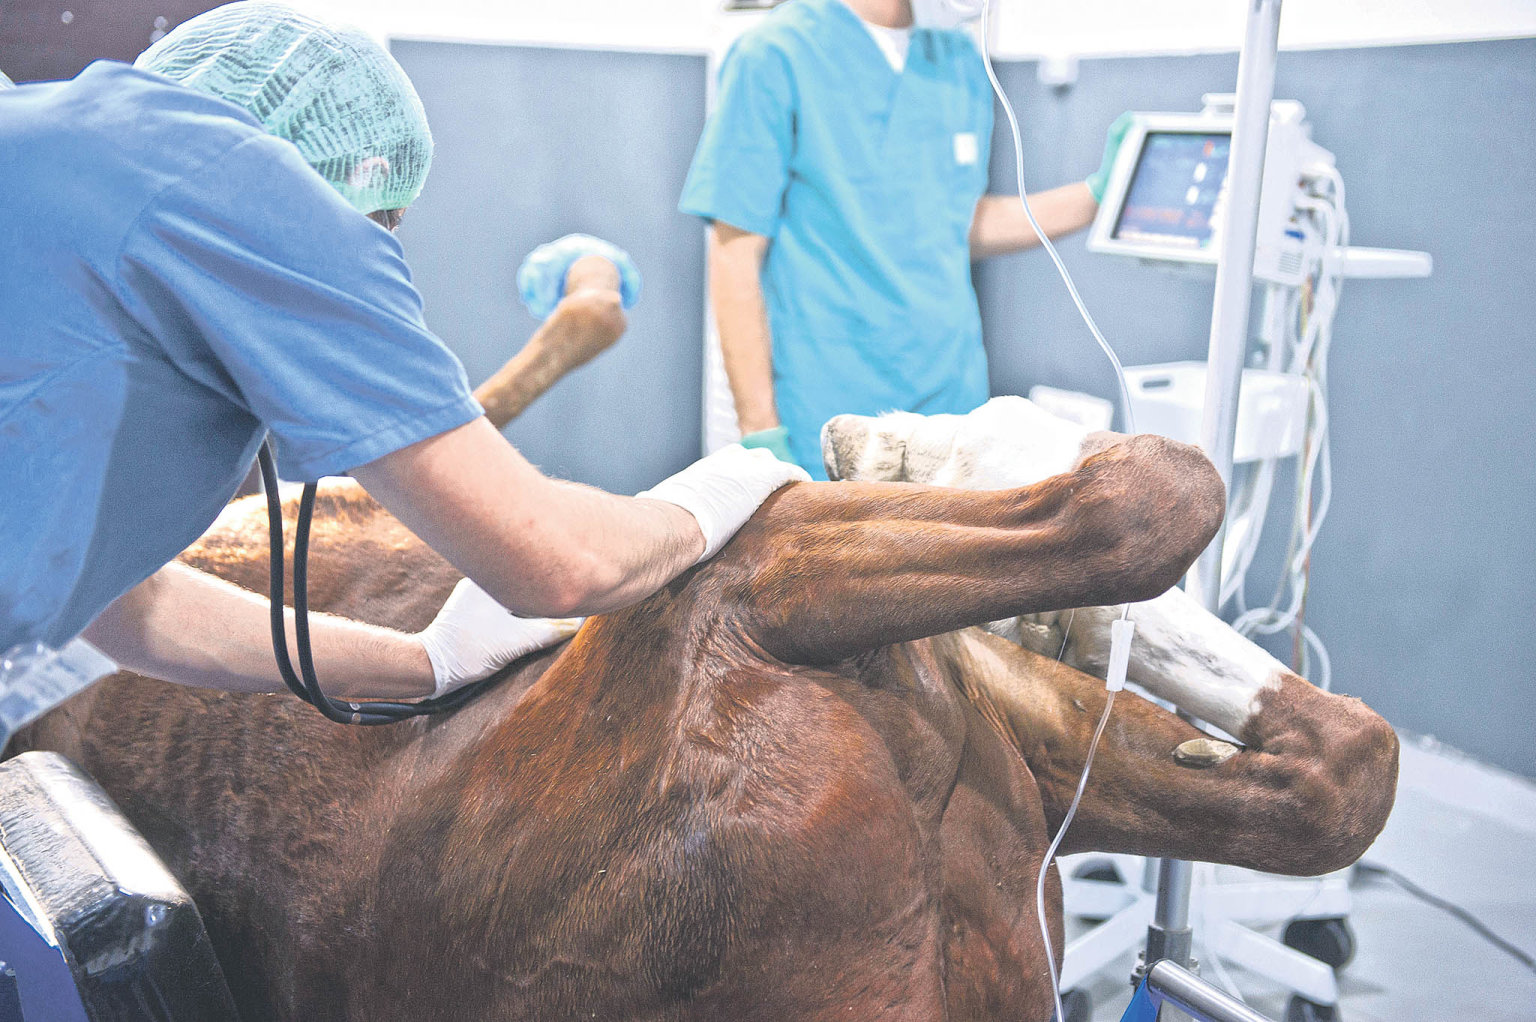 Chirurgická léèba koní je finanènì nároèná. Mùže dosahovat až statisícových èástek.